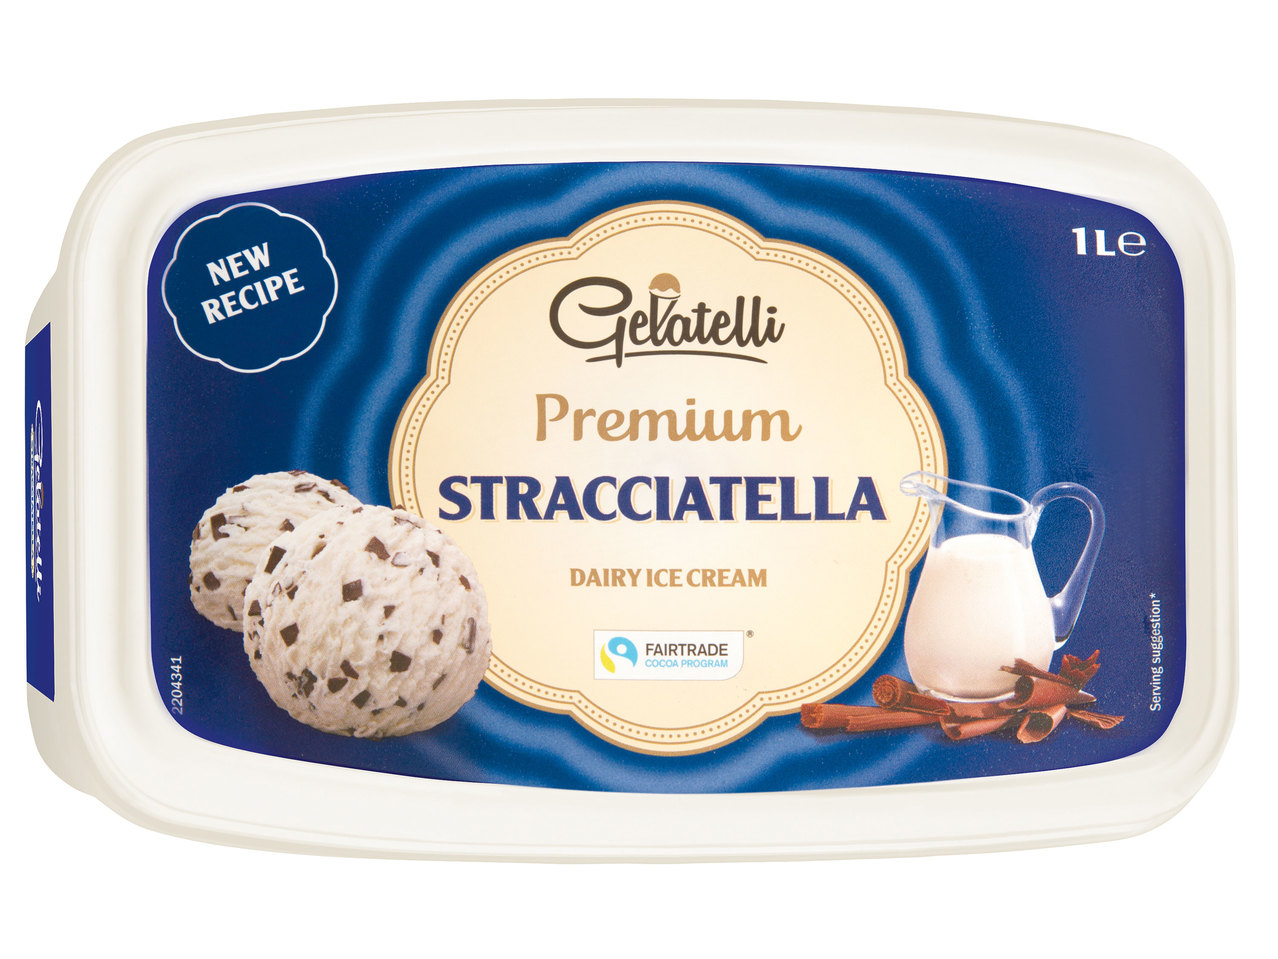 Înghețată Premium Stracciatella